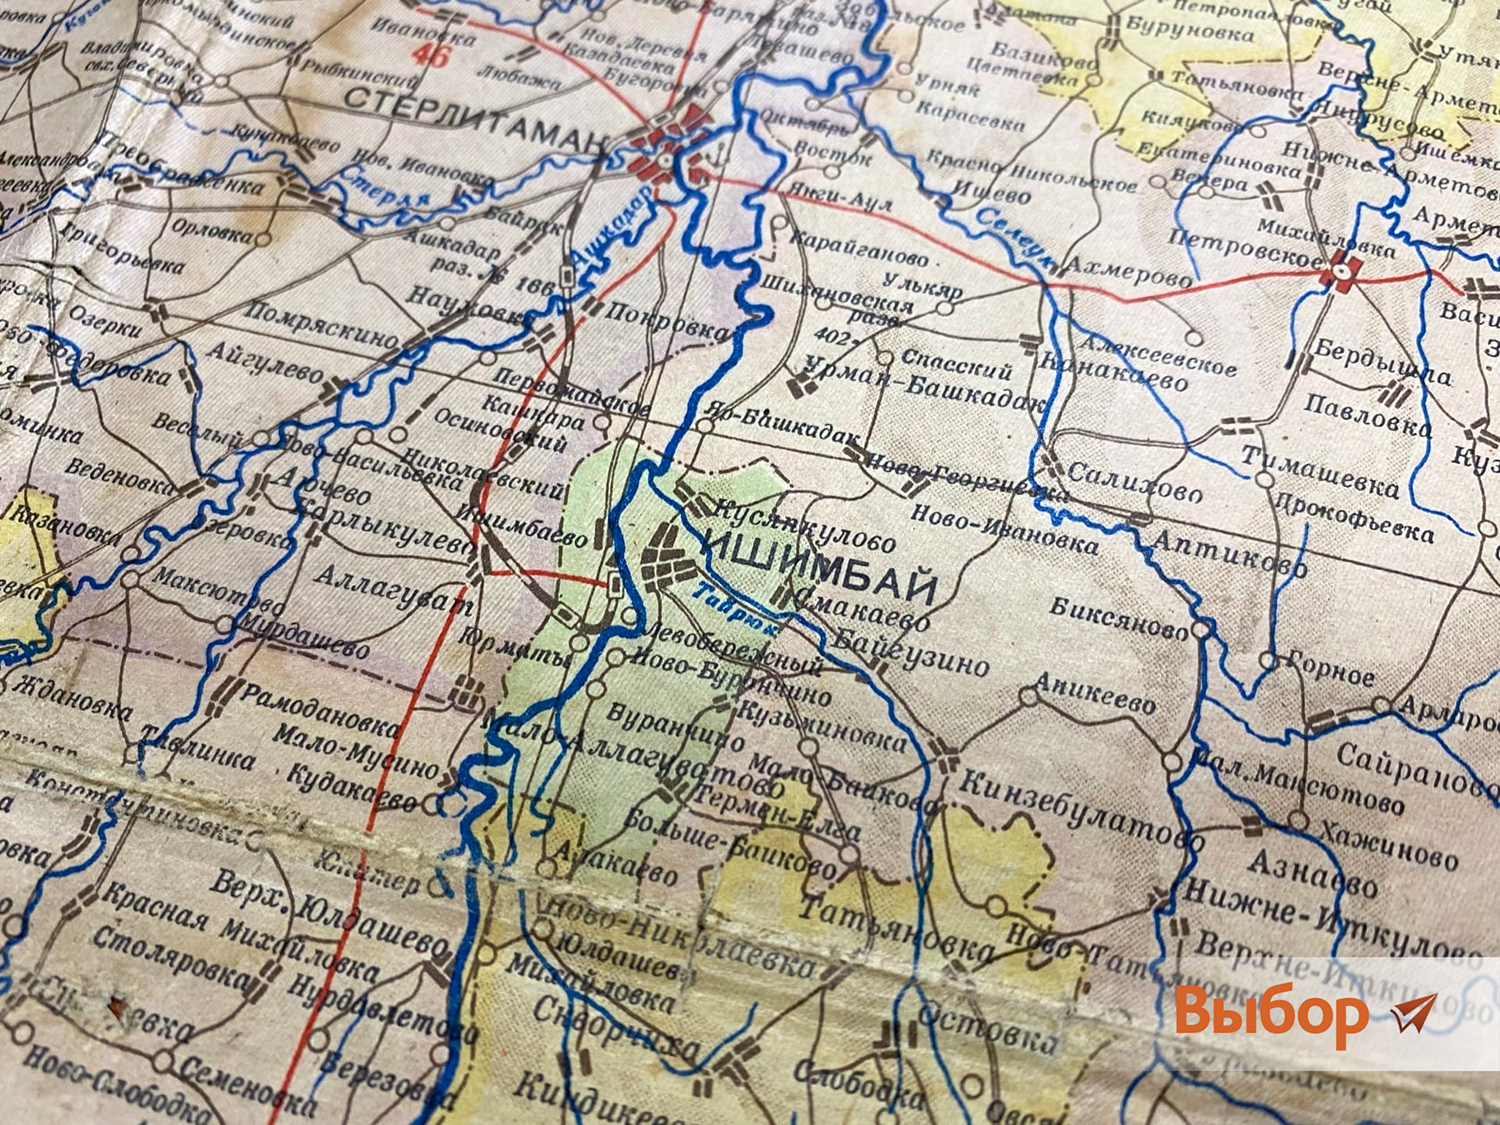 Новый музейный экспонат: карта, на которой нет одного из городов Башкирии